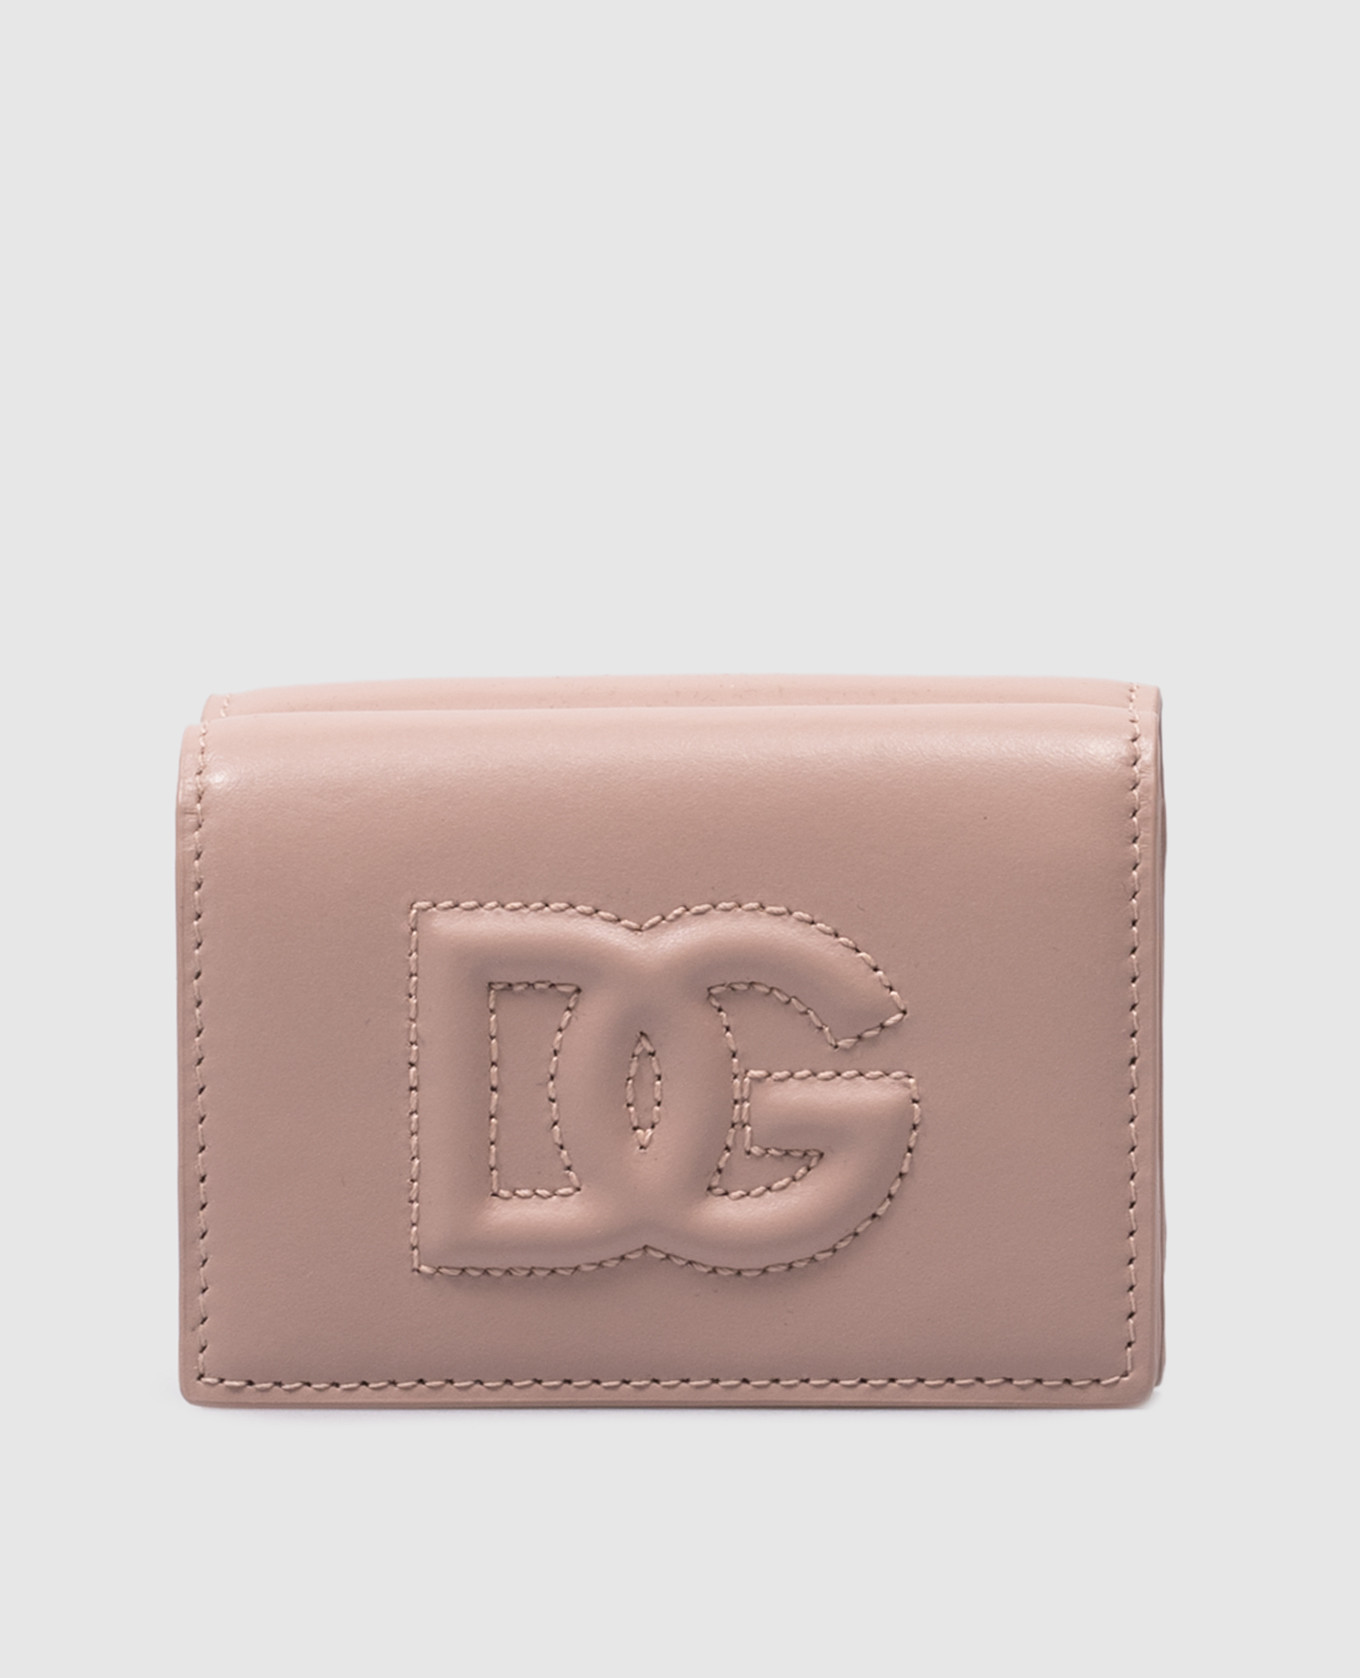 DG LOGO beige leather wallet